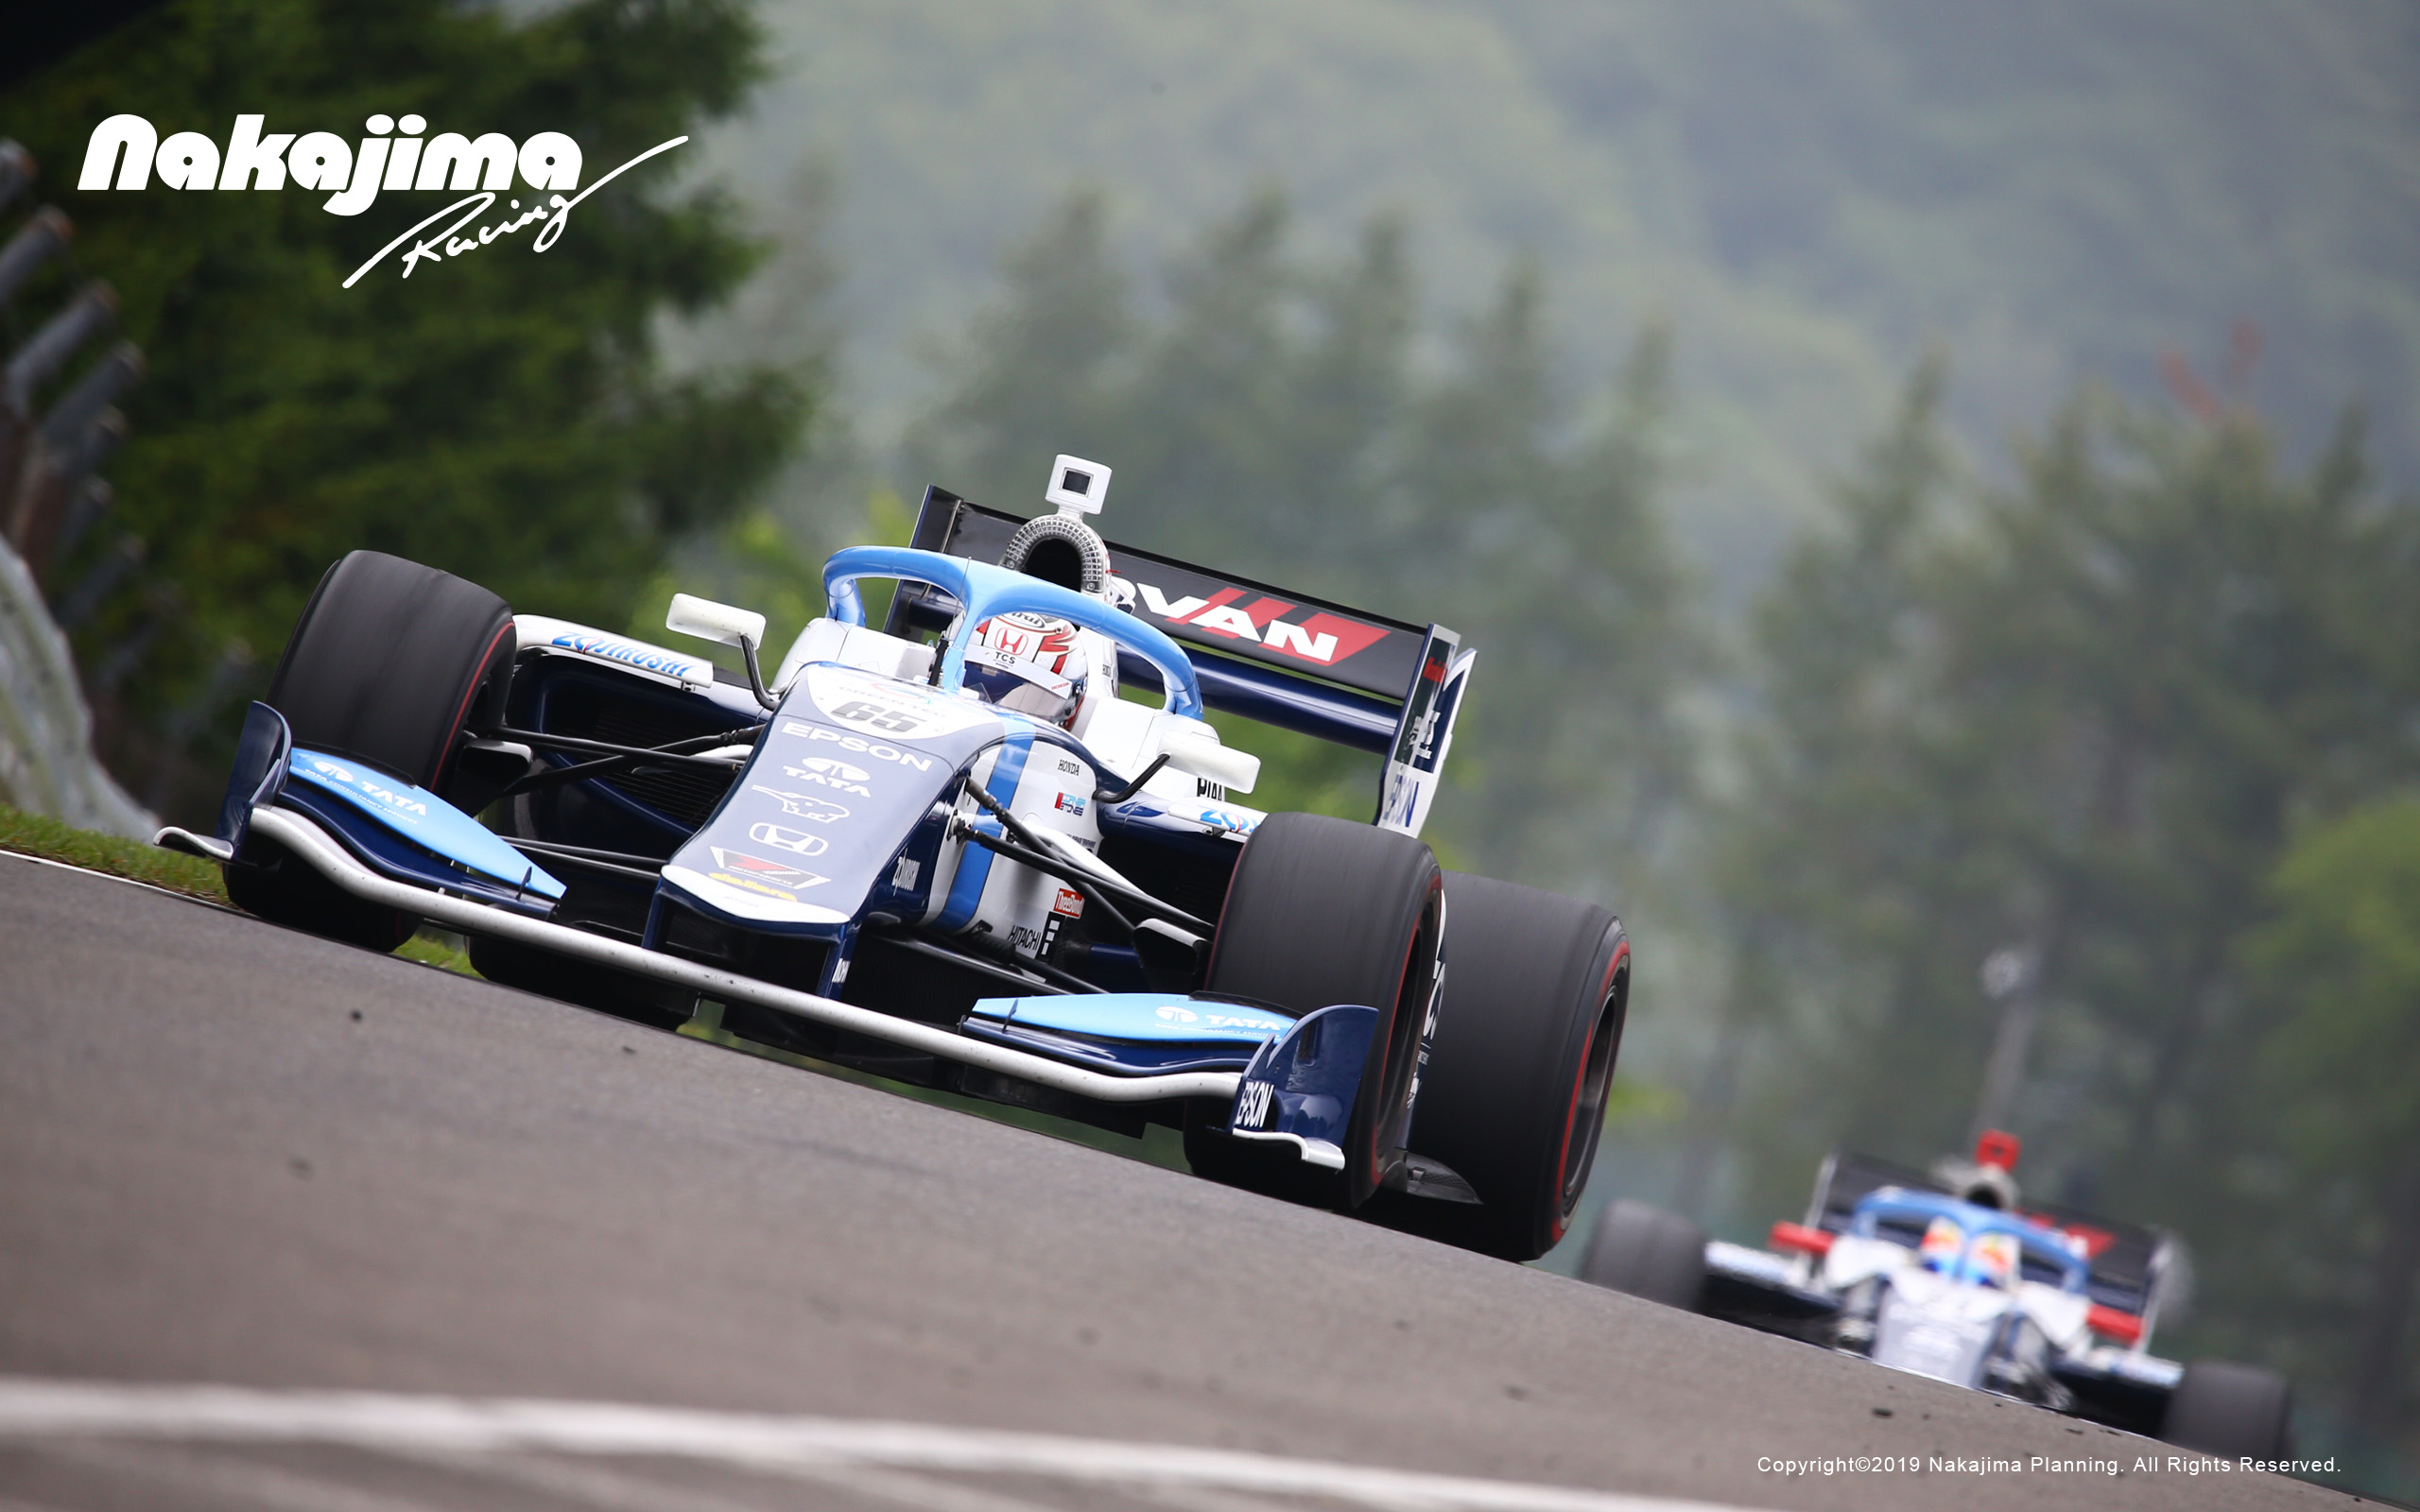 壁紙ダウンロード Nakajima Racing Official Website スーパーフォーミュラ スーパーgt Fcj F3 F1